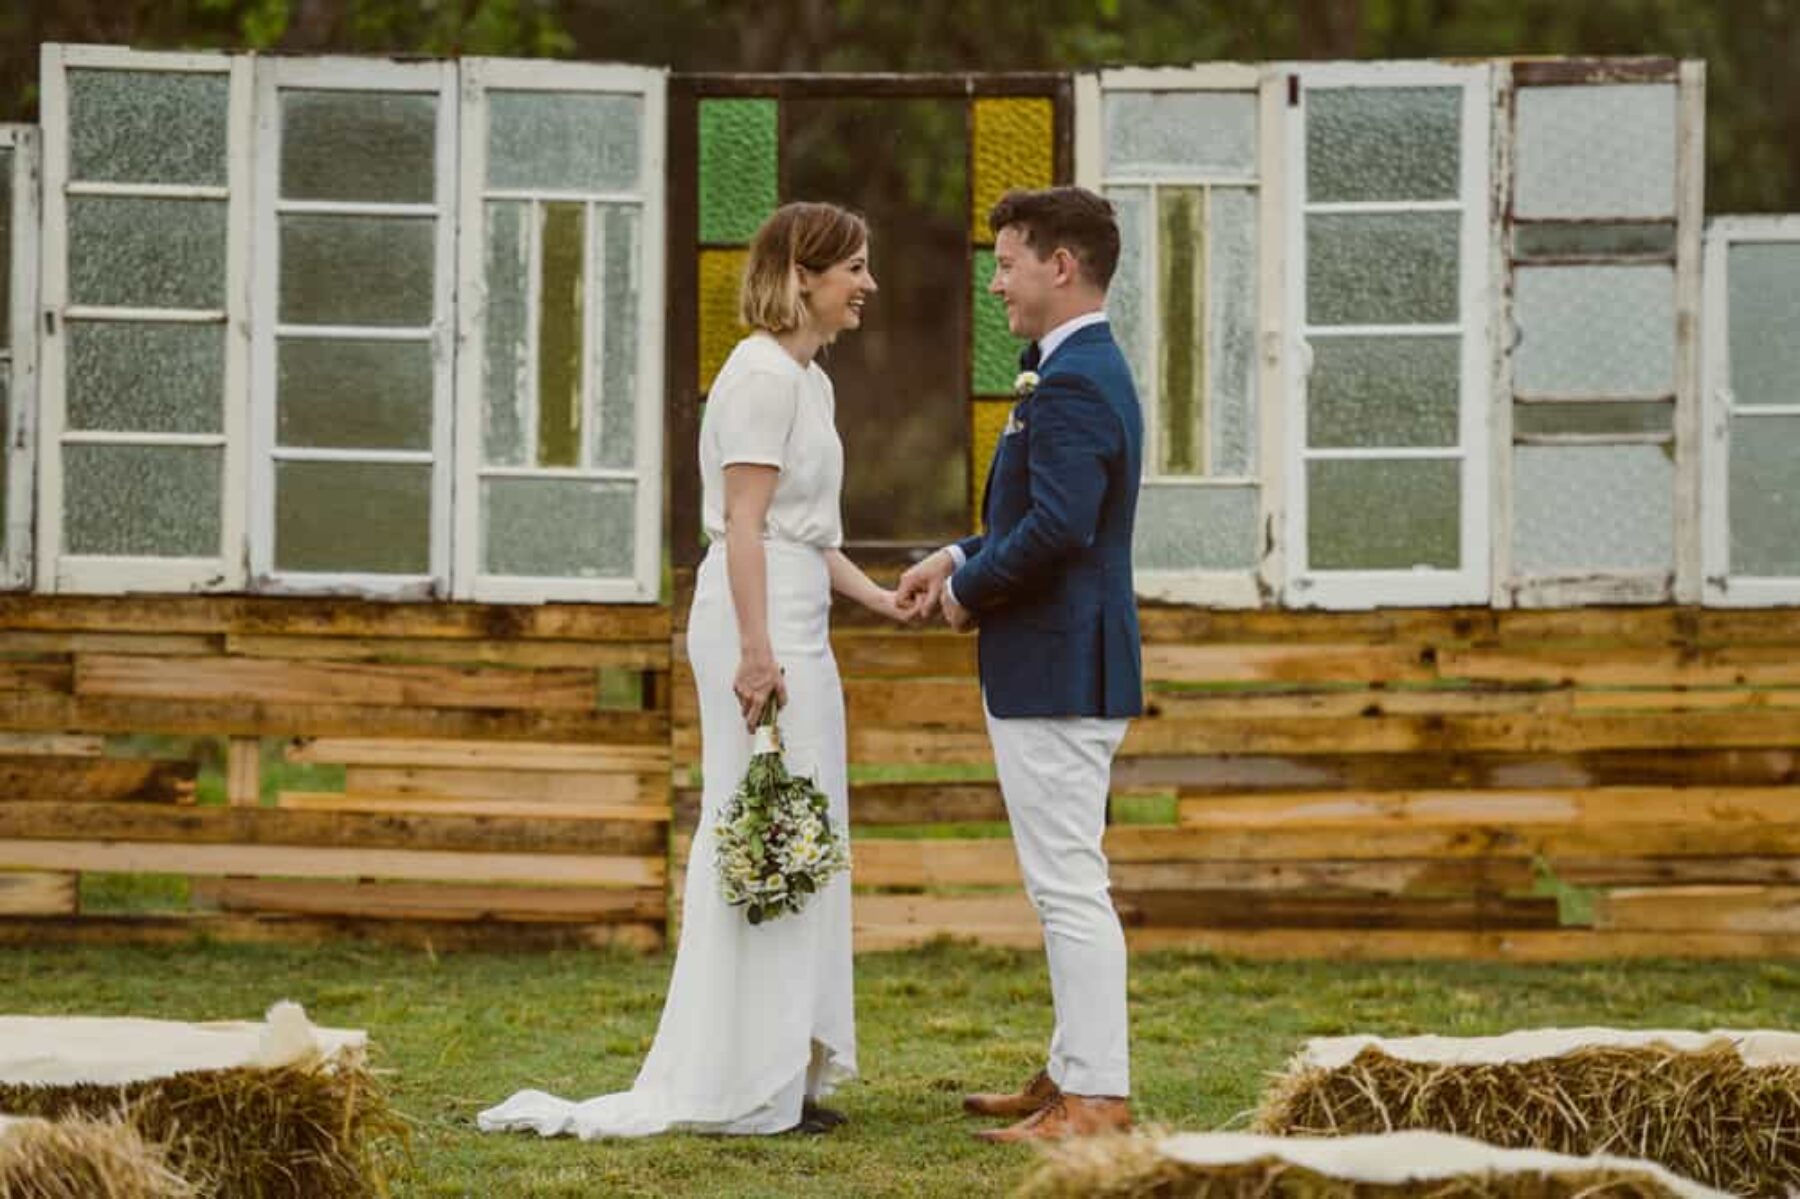 DIY pallet wedding backdrop